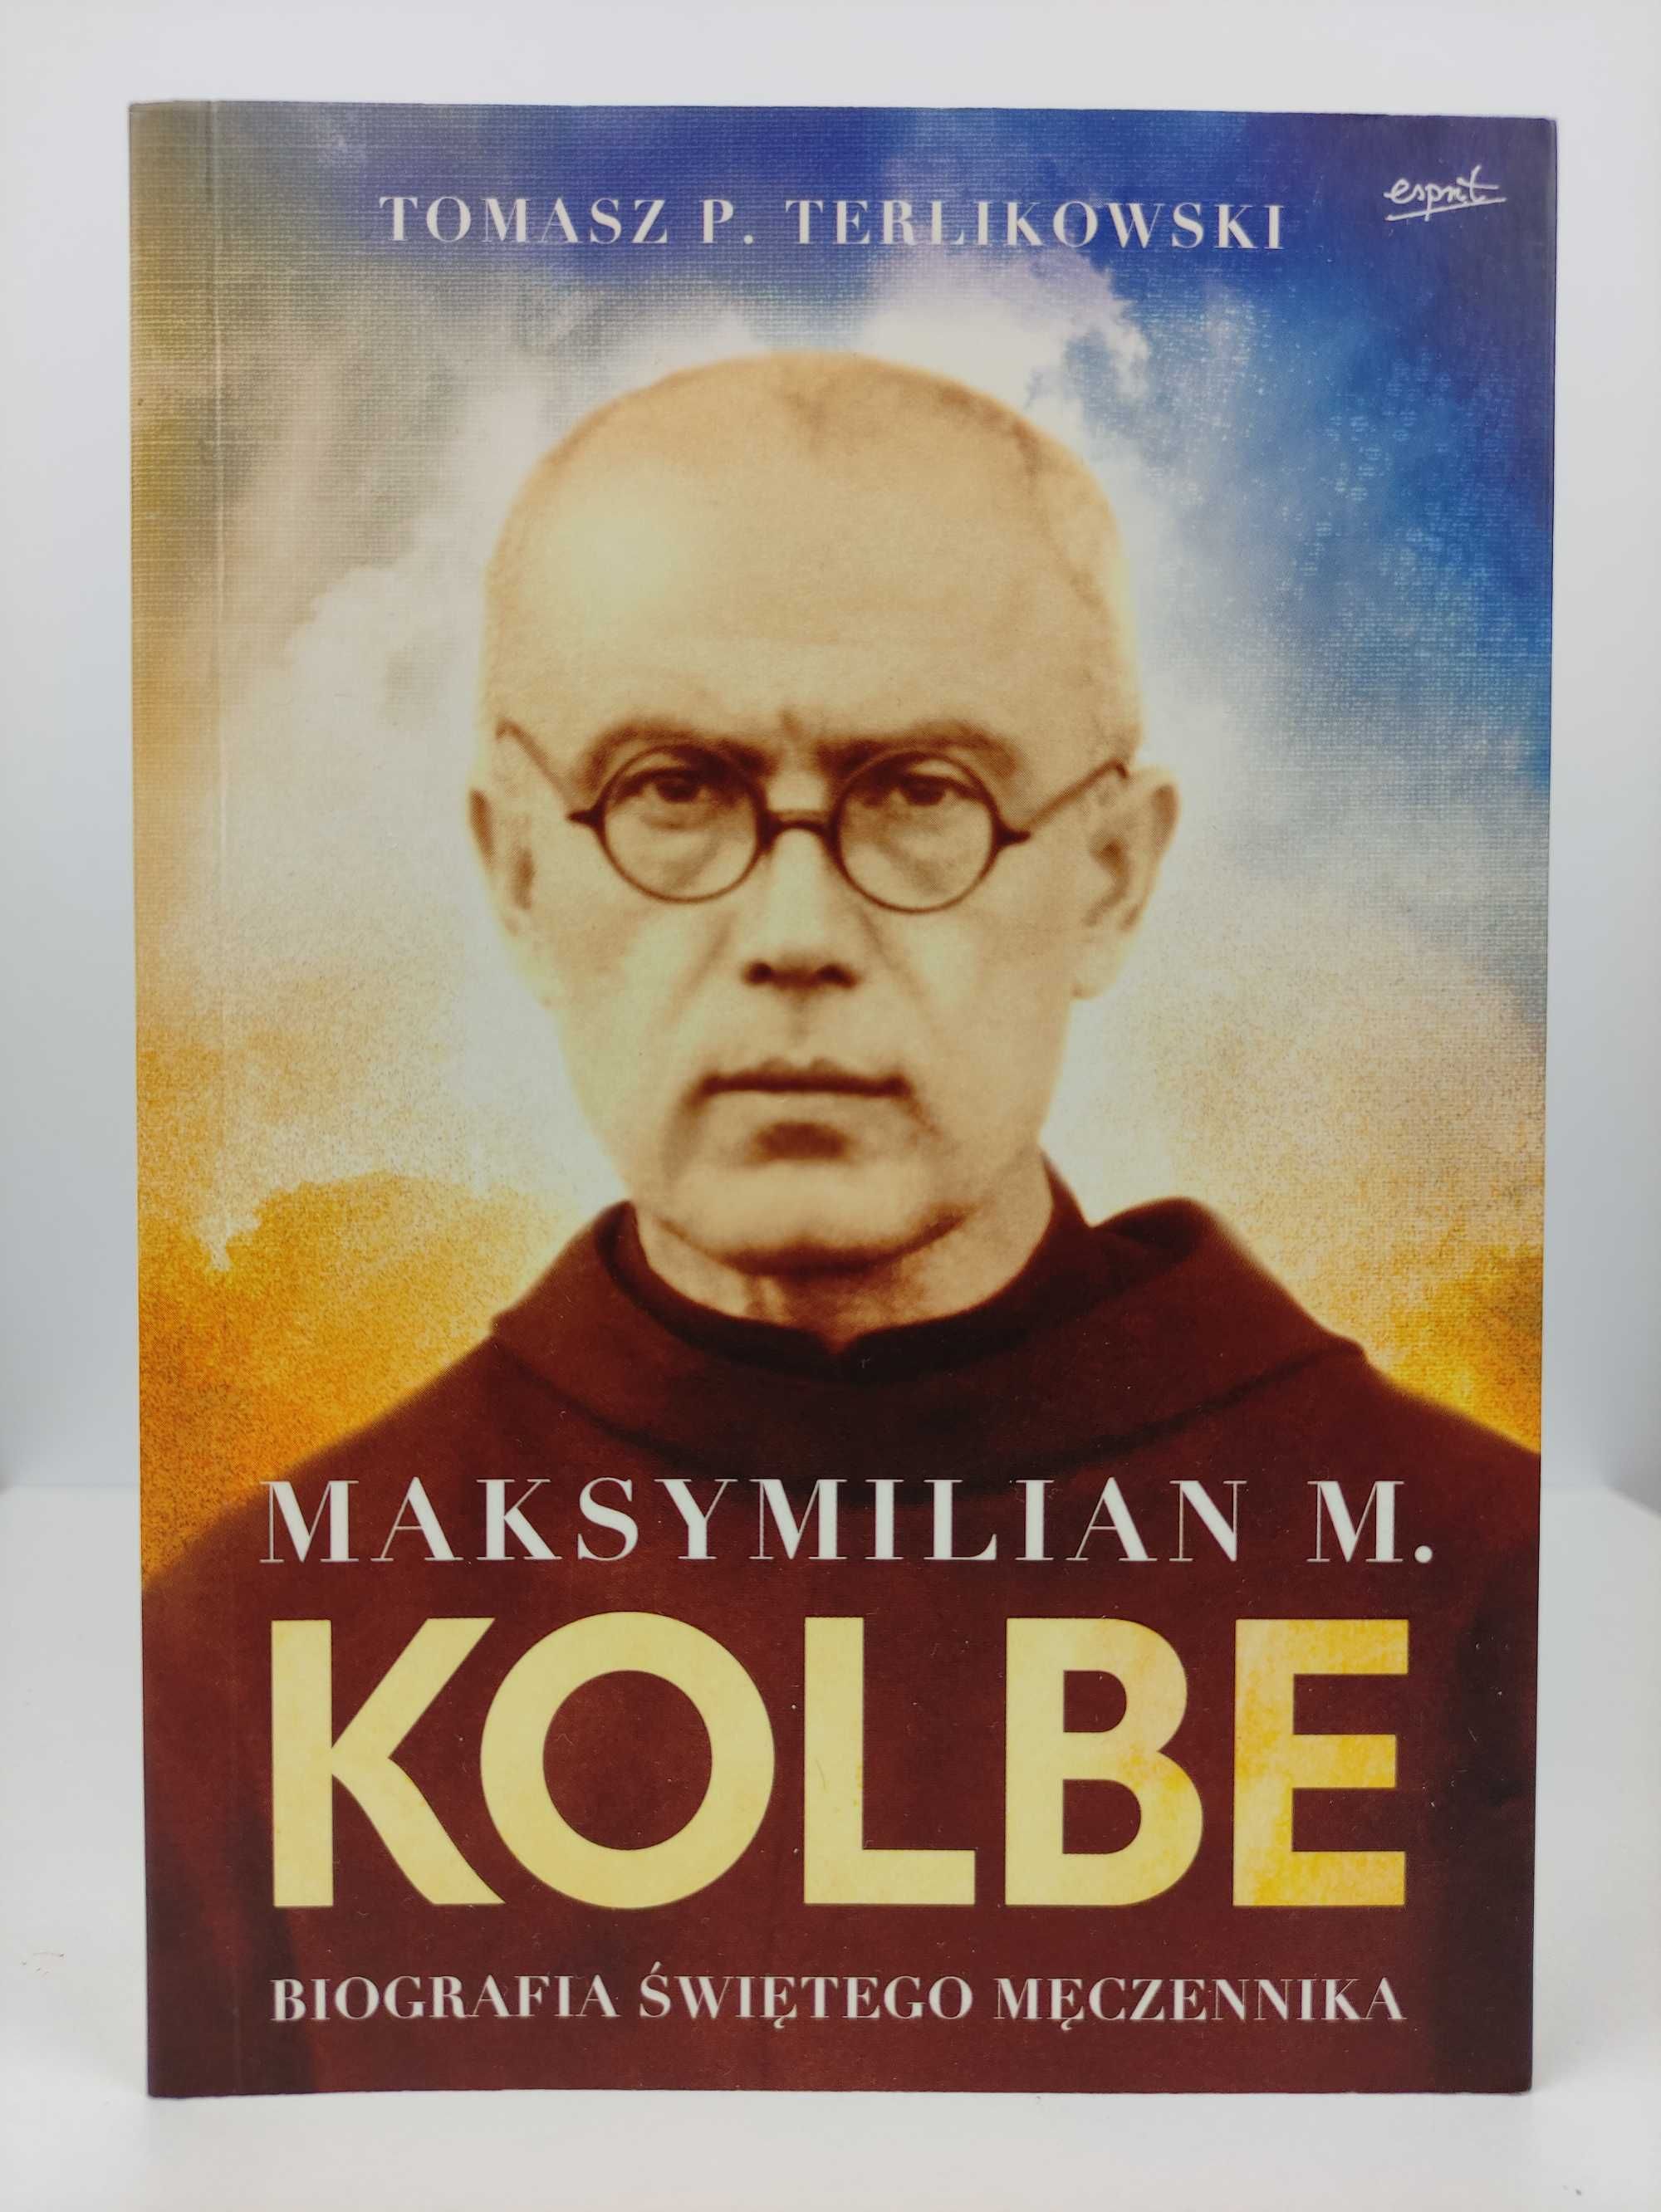 Maksymilian Kolbe biografia świętego męczennika